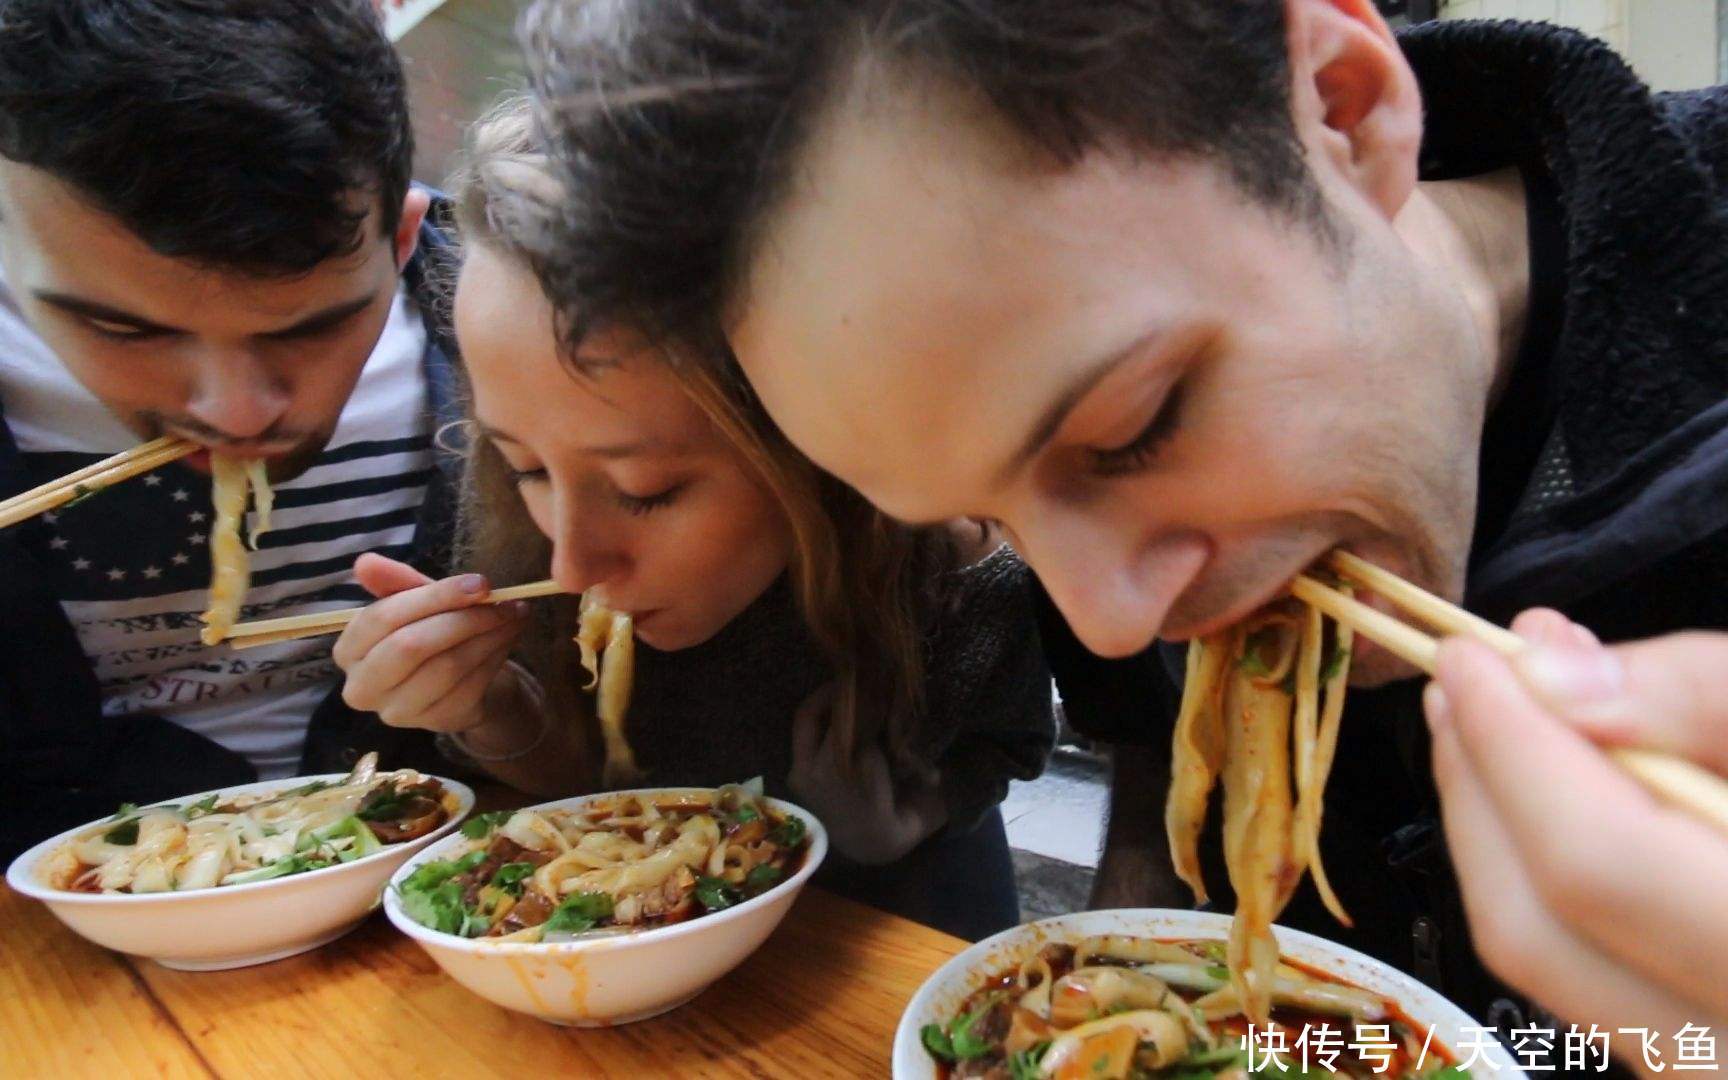 在老外眼中,最好吃的3道中国菜,其中有一道菜